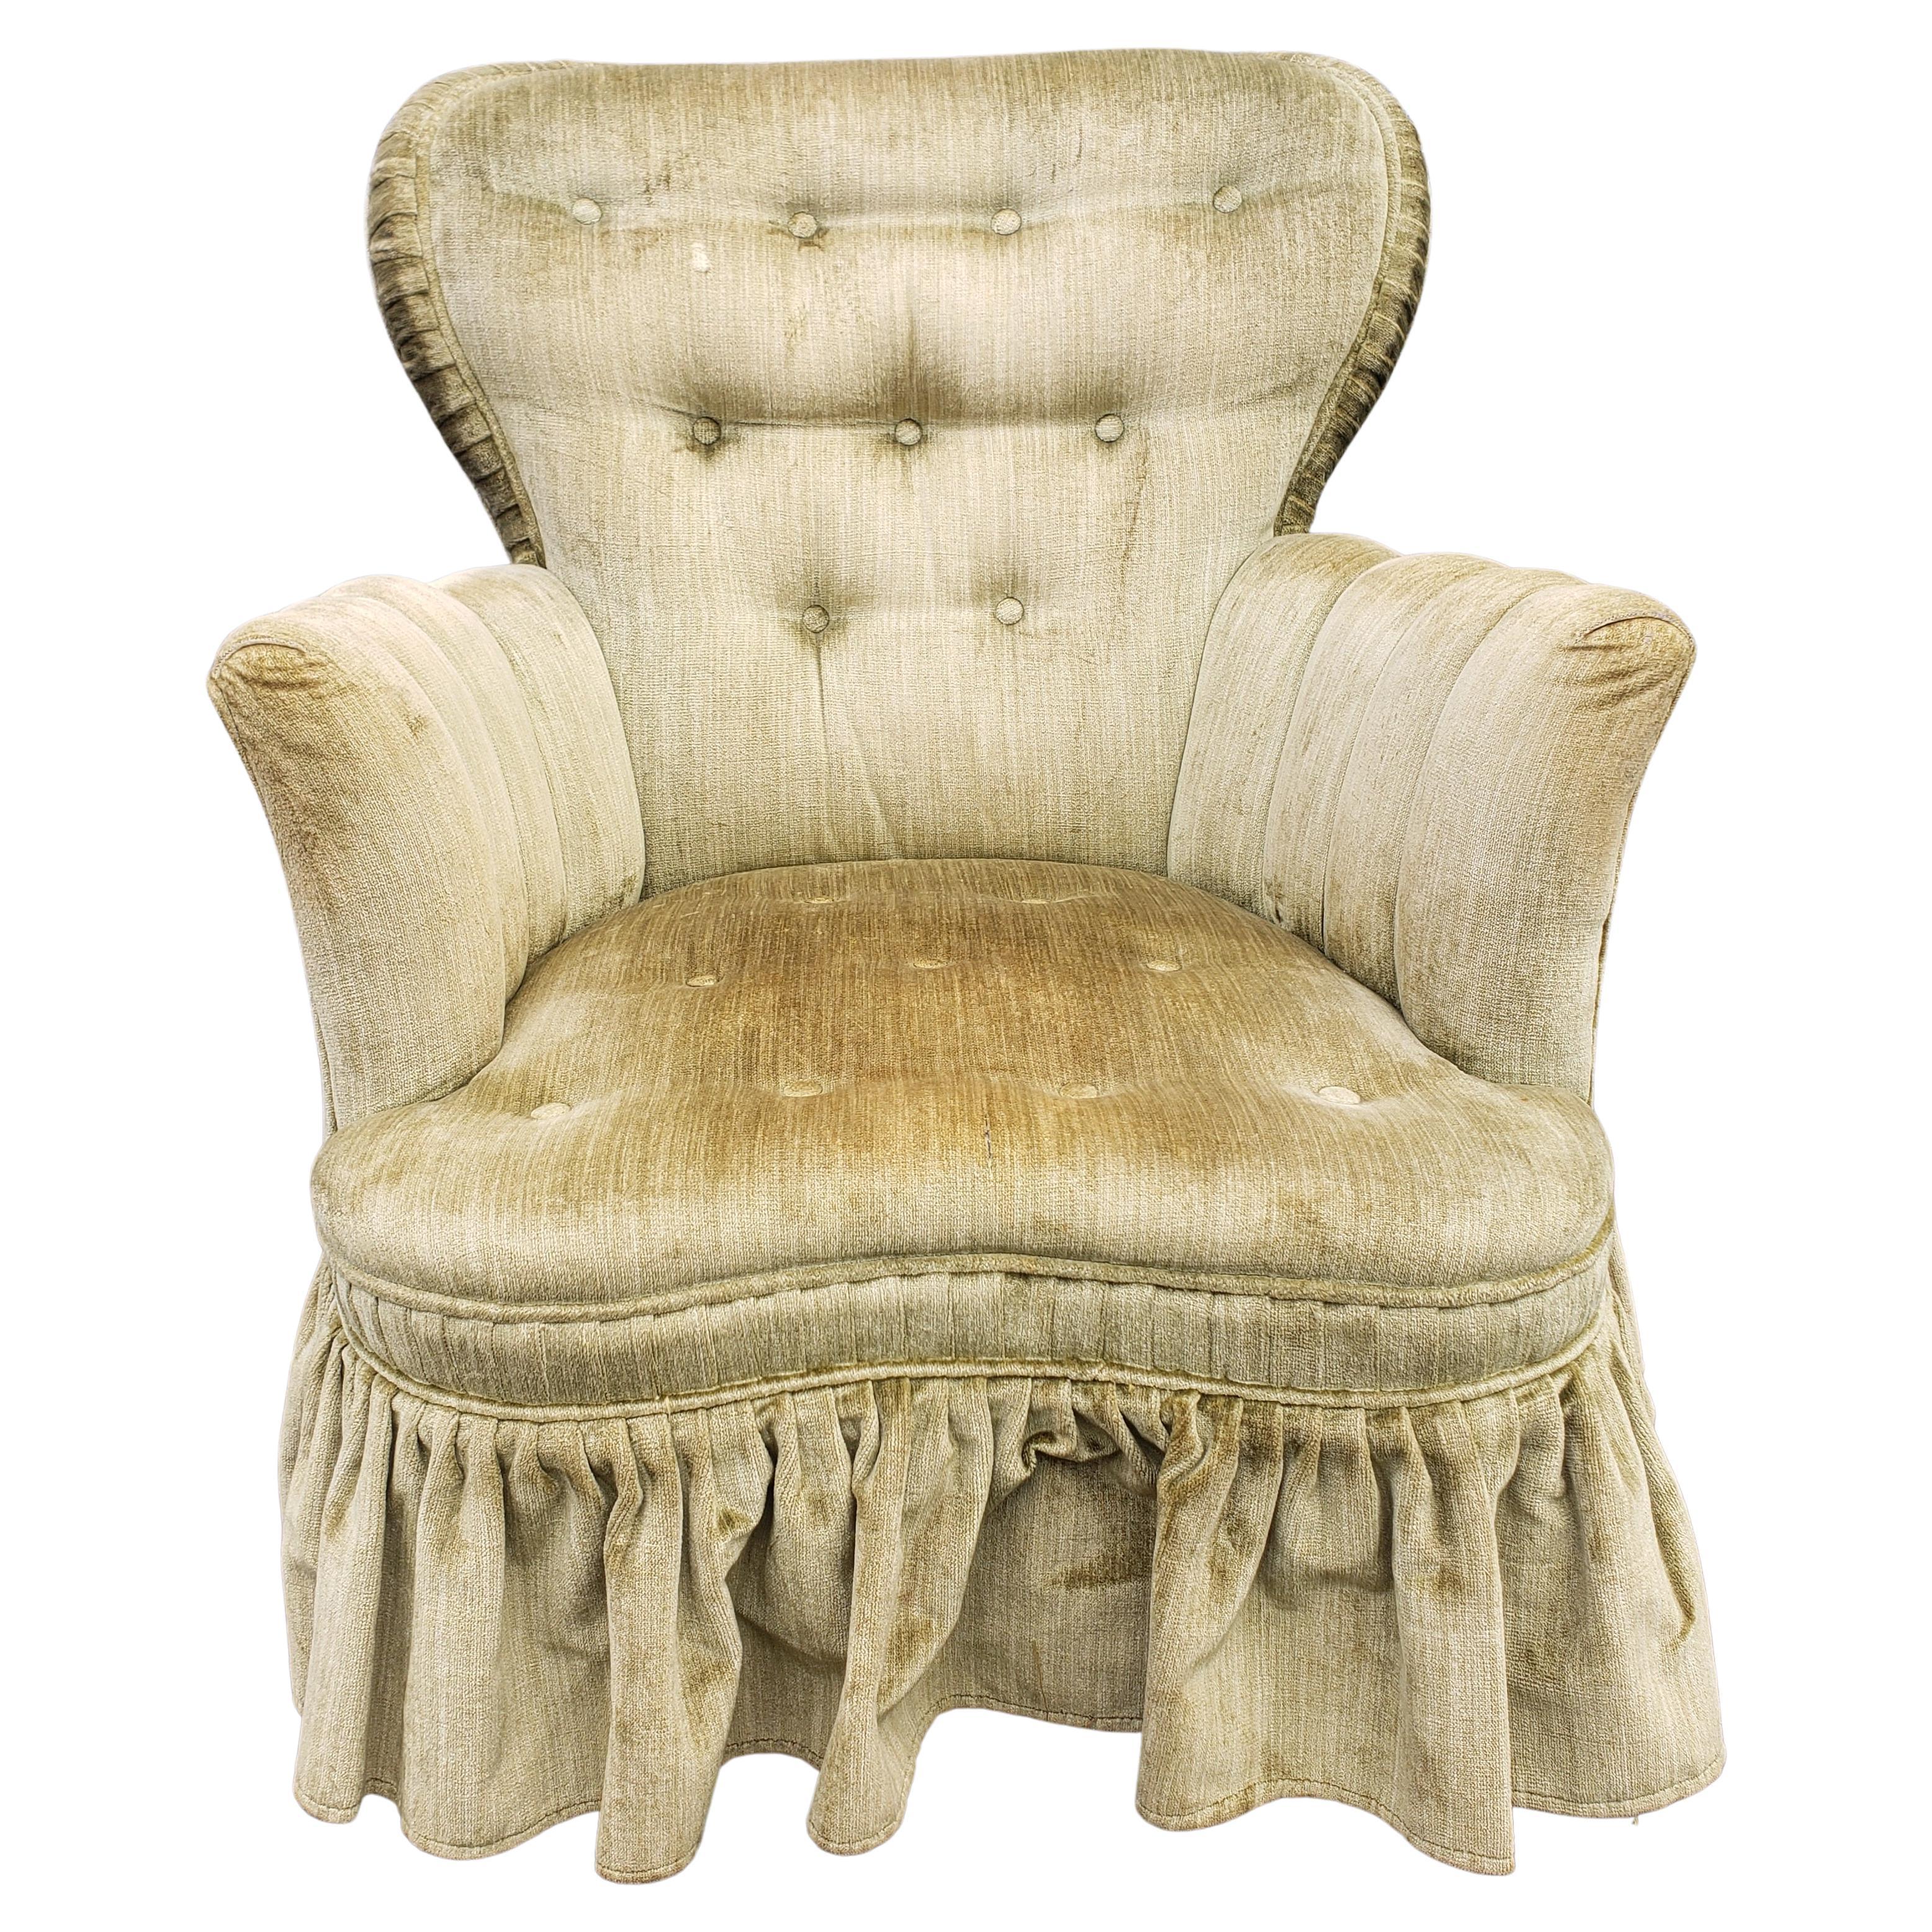 Chaise longue en velours du milieu du siècle, tapissée et tuftée, de couleur vert olive, avec jupe, en bon état vintage. Le siège a des ressorts, et est souple, mais très ferme. Assise basse de 14